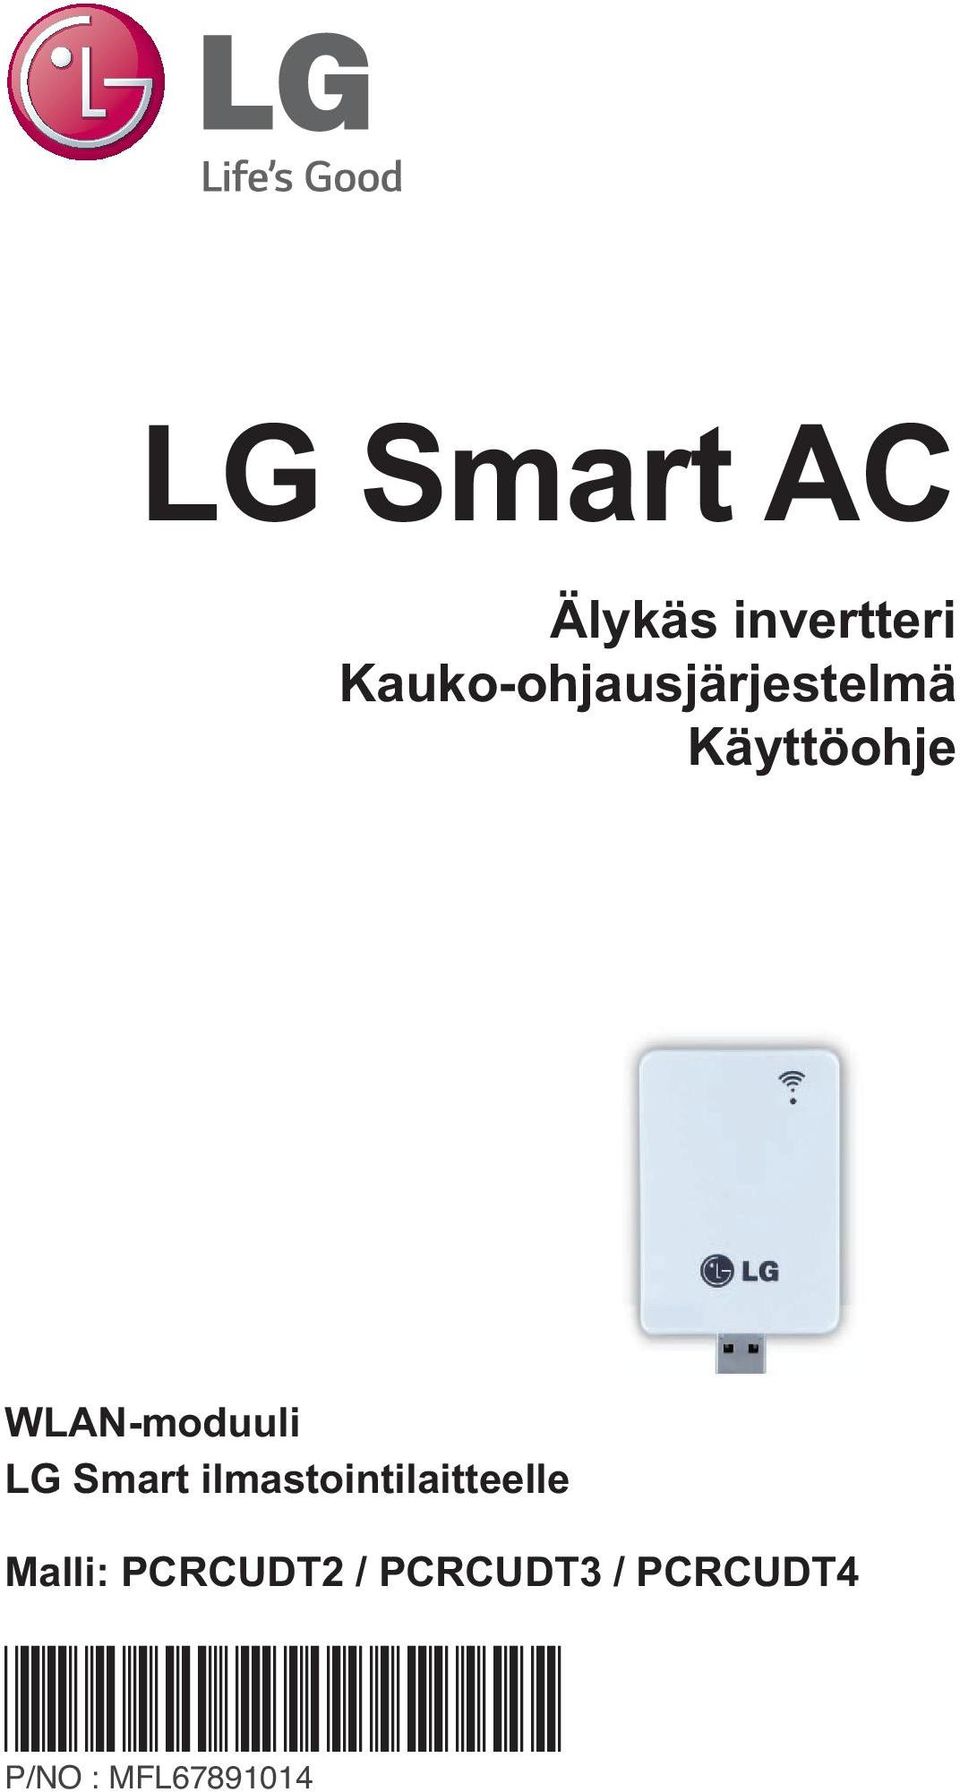 WLAN-moduuli LG Smart